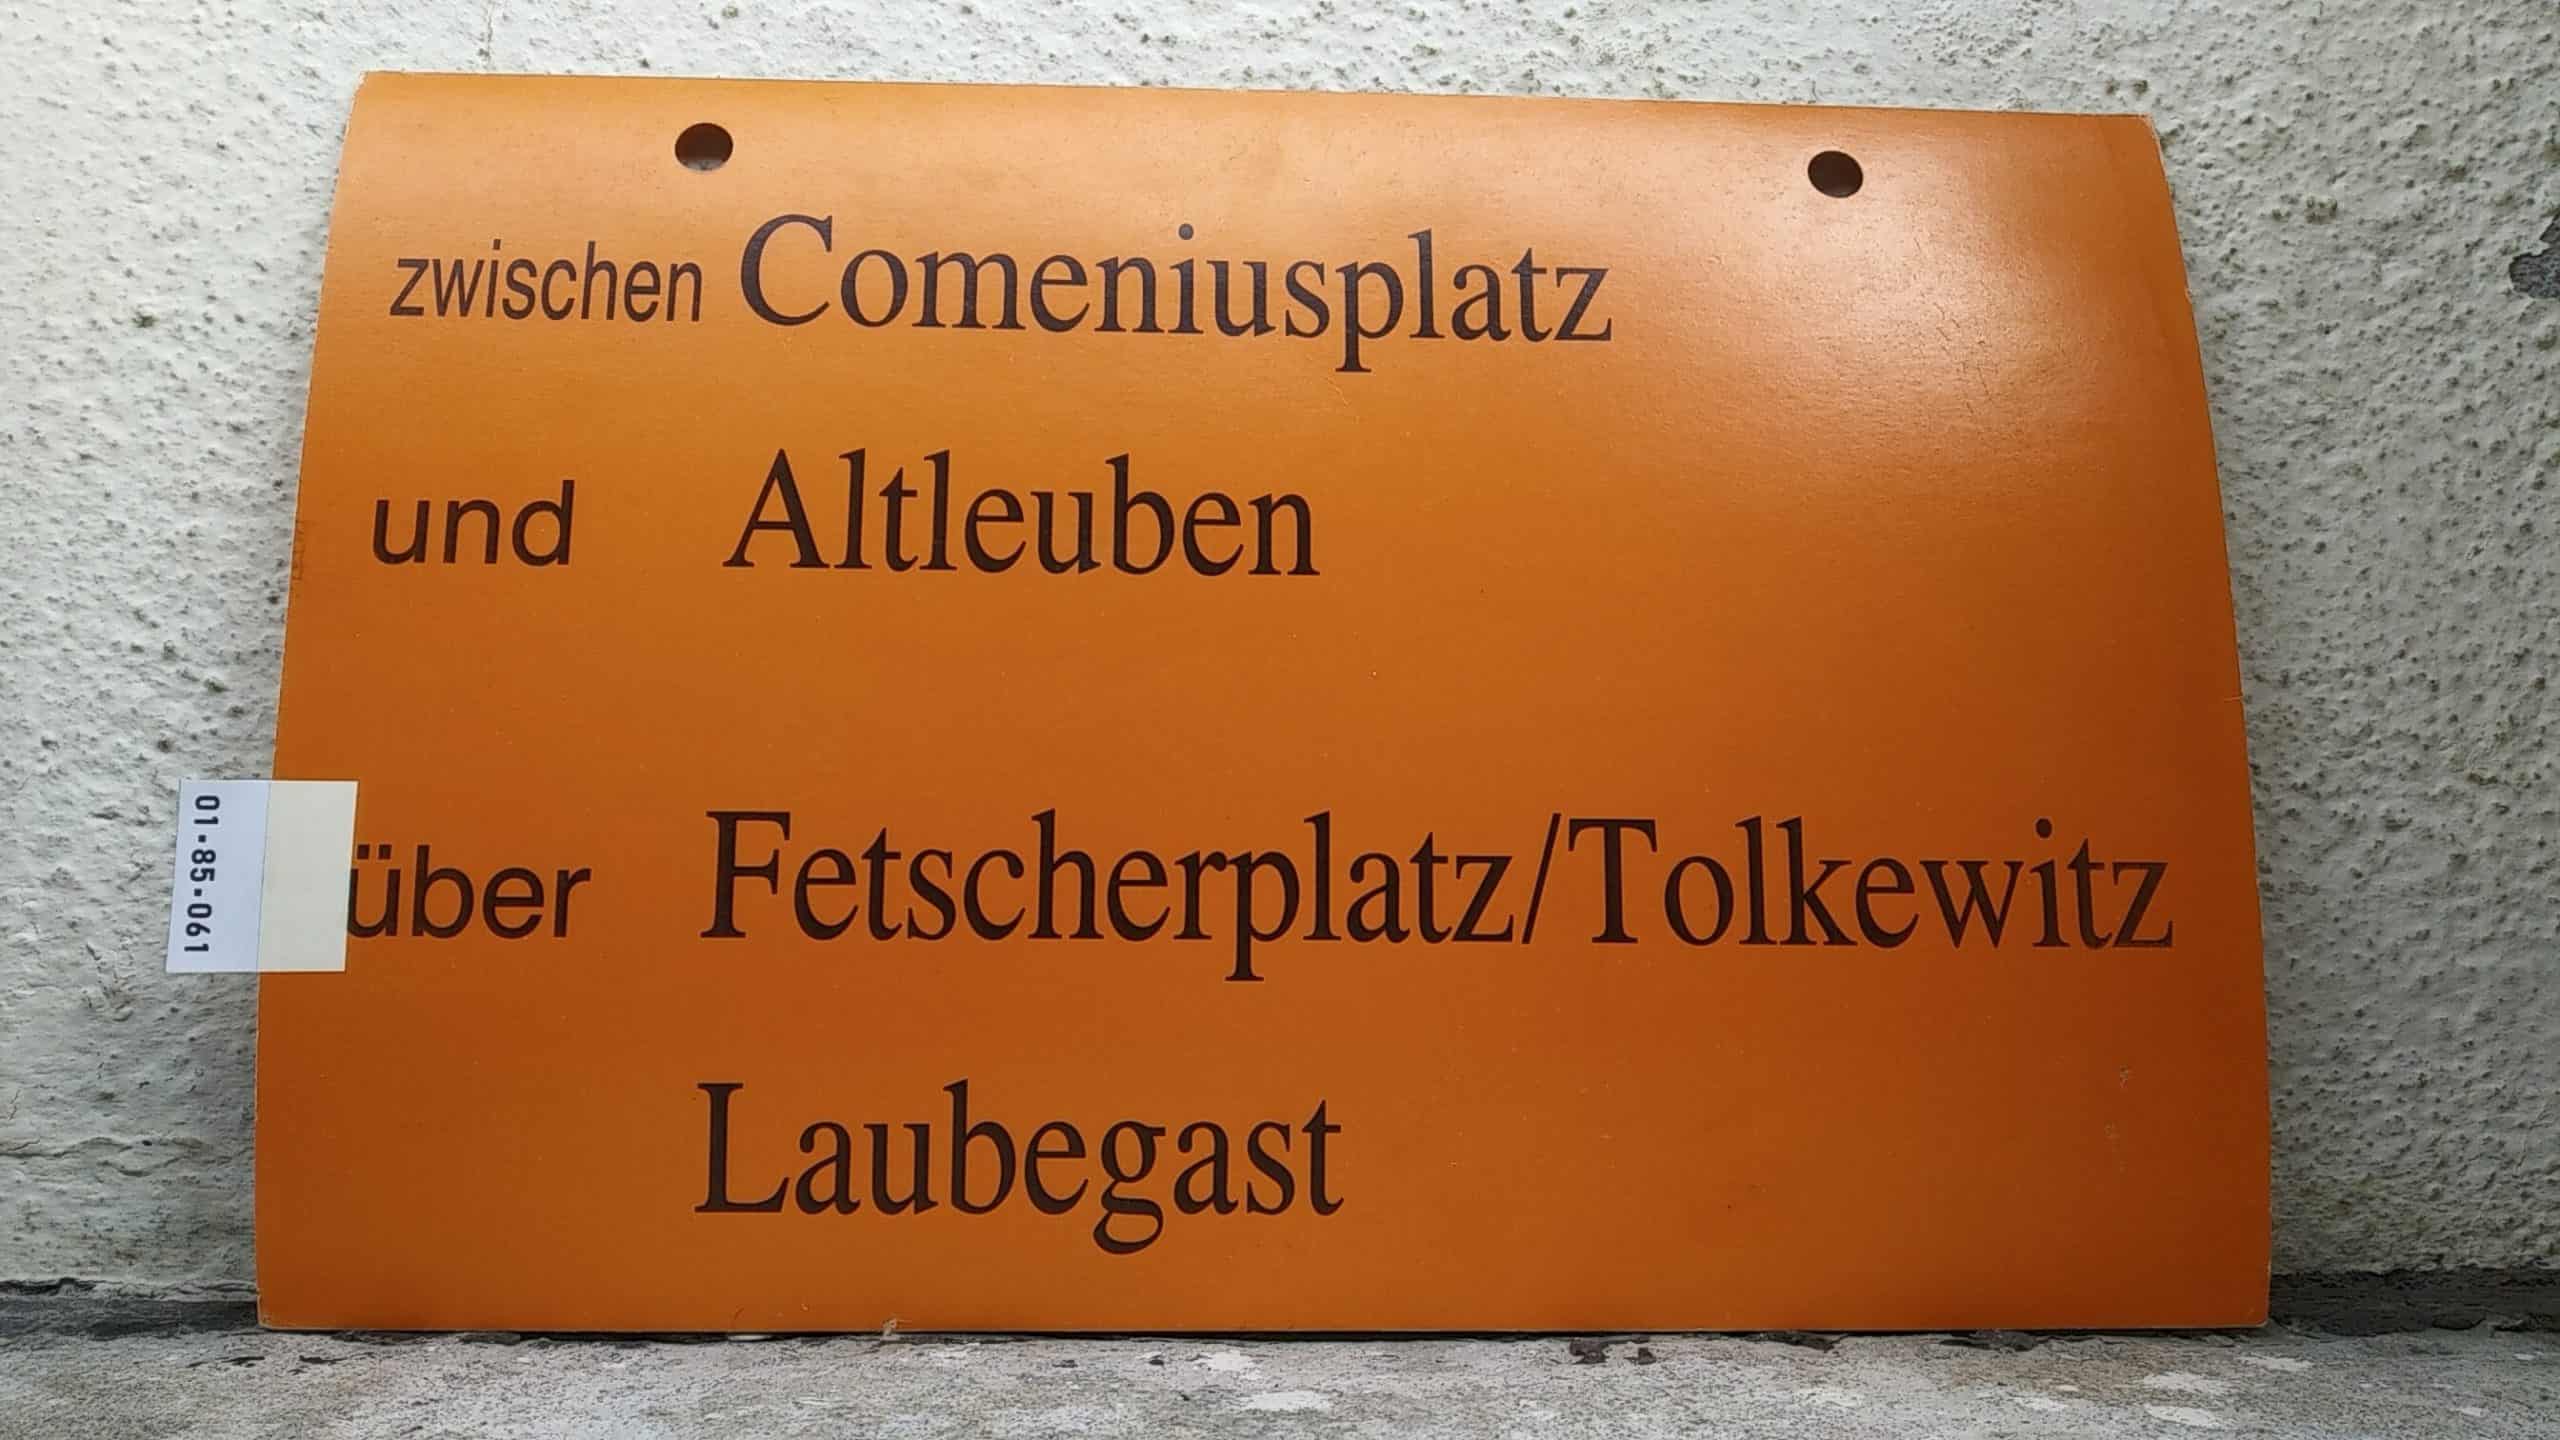 Ein seltenes Straßenbahn-Umleitungsschild aus Dresden: zwischen Comeniusplatz und Altleuben über Fetscherplatz/Tolkewitz Laubegast